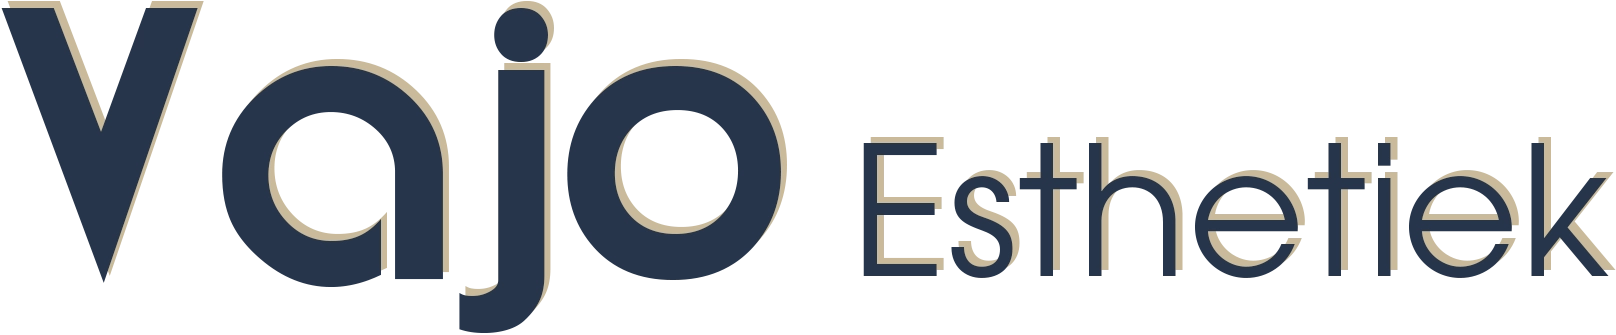 Vajo Esthetiek logo